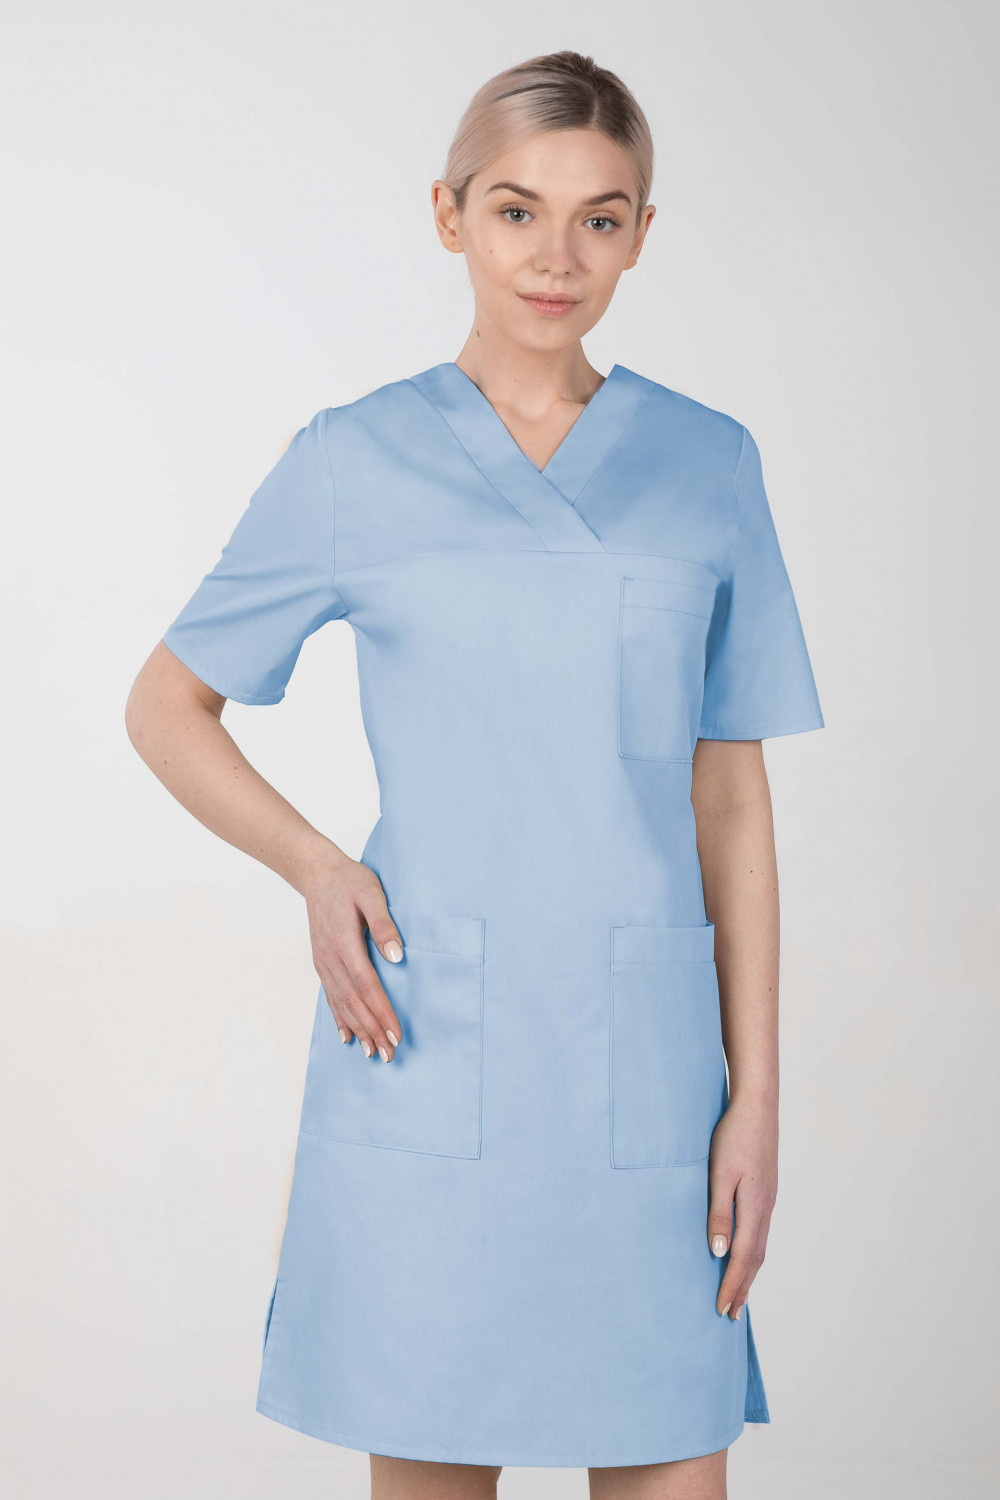 M-076FX Sukienka damska elastyczna medyczna fartuch kosmetyczny kolor błękitny